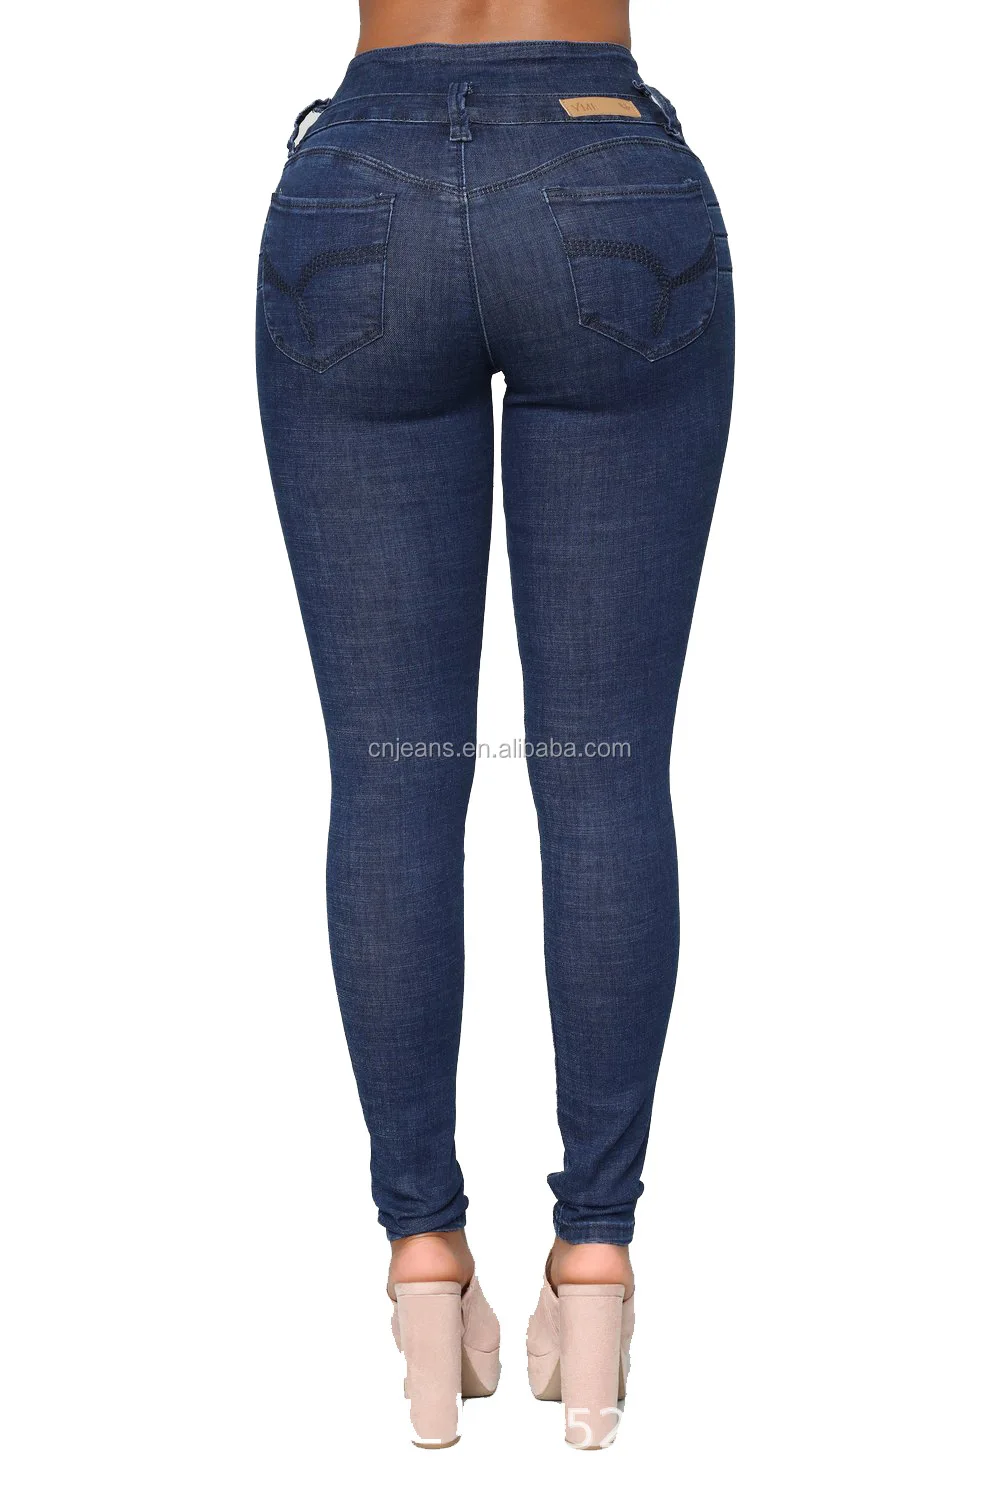 Gzy Womens Jeans High Waist Sexy Ladies Denim Women Skinny Jeans Buy 4808